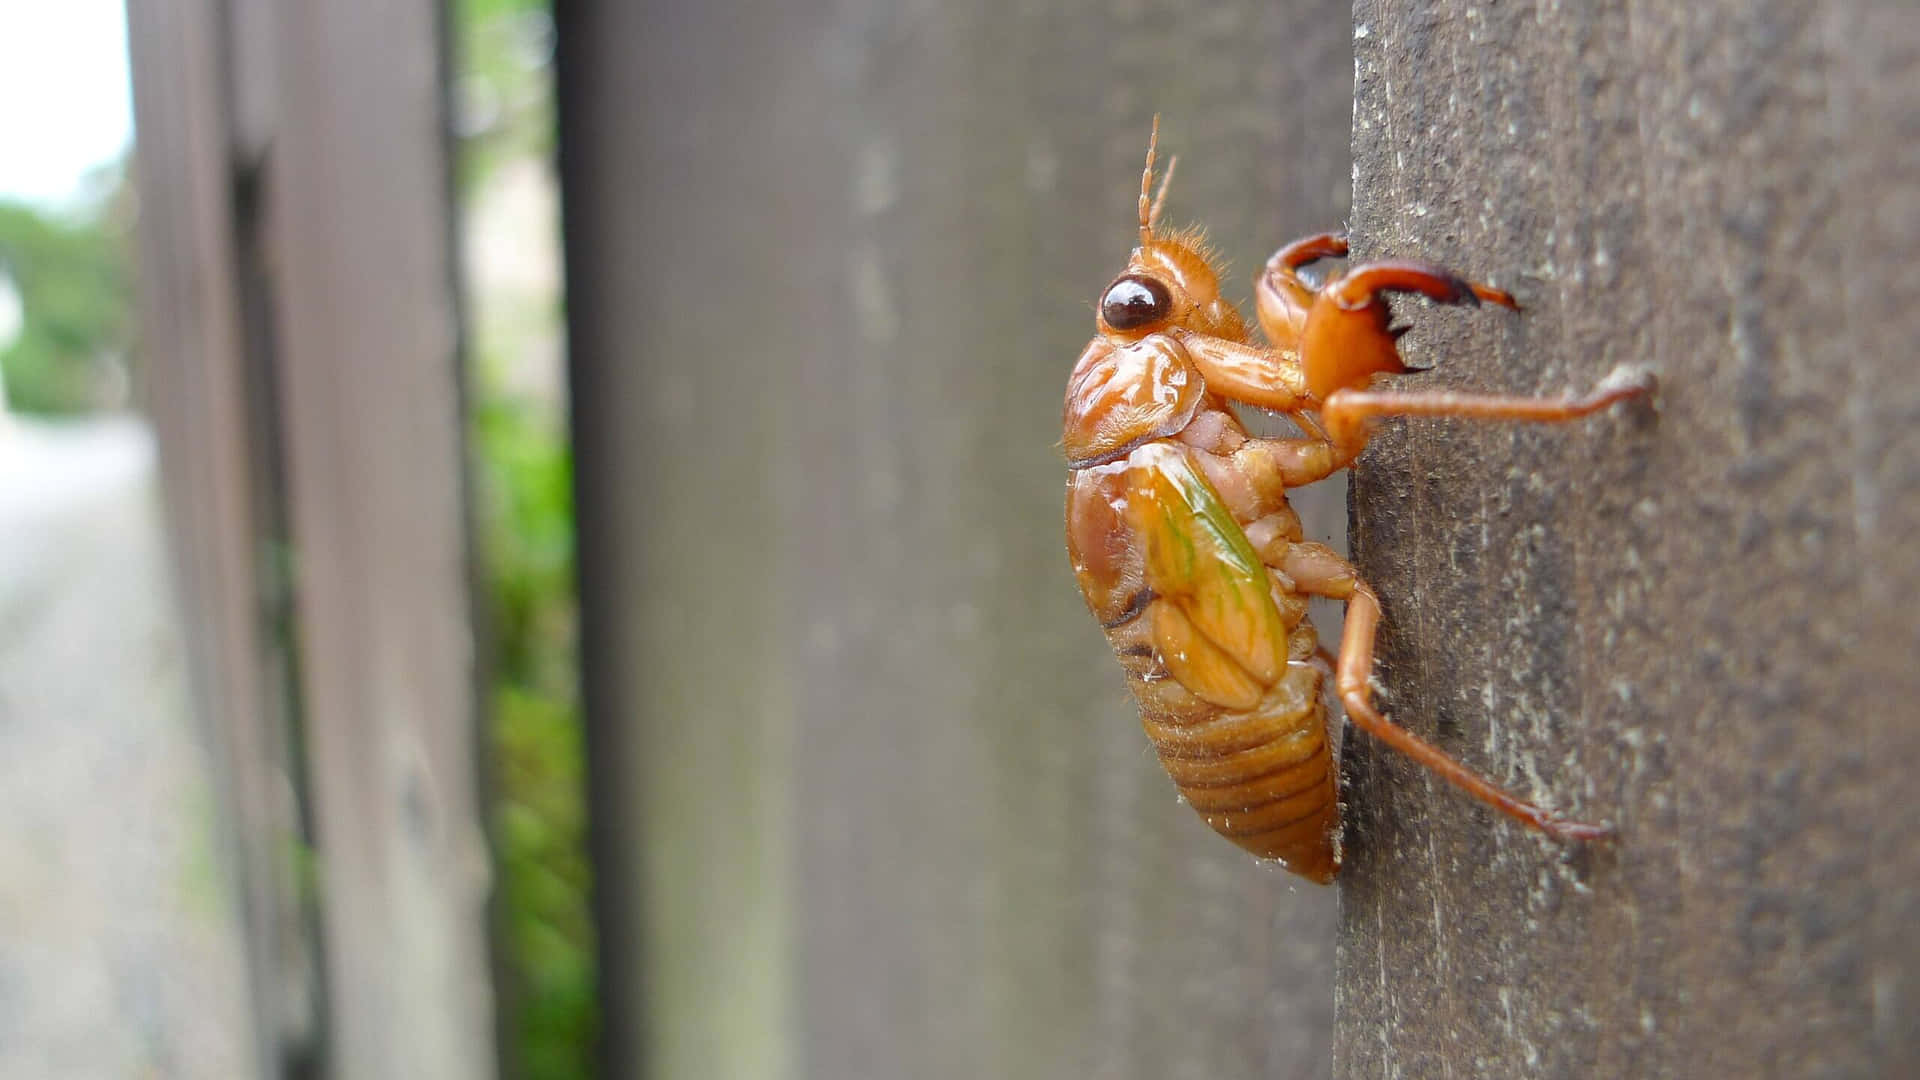 Cicada Nymph Climbing Wooden Surface.jpg Wallpaper